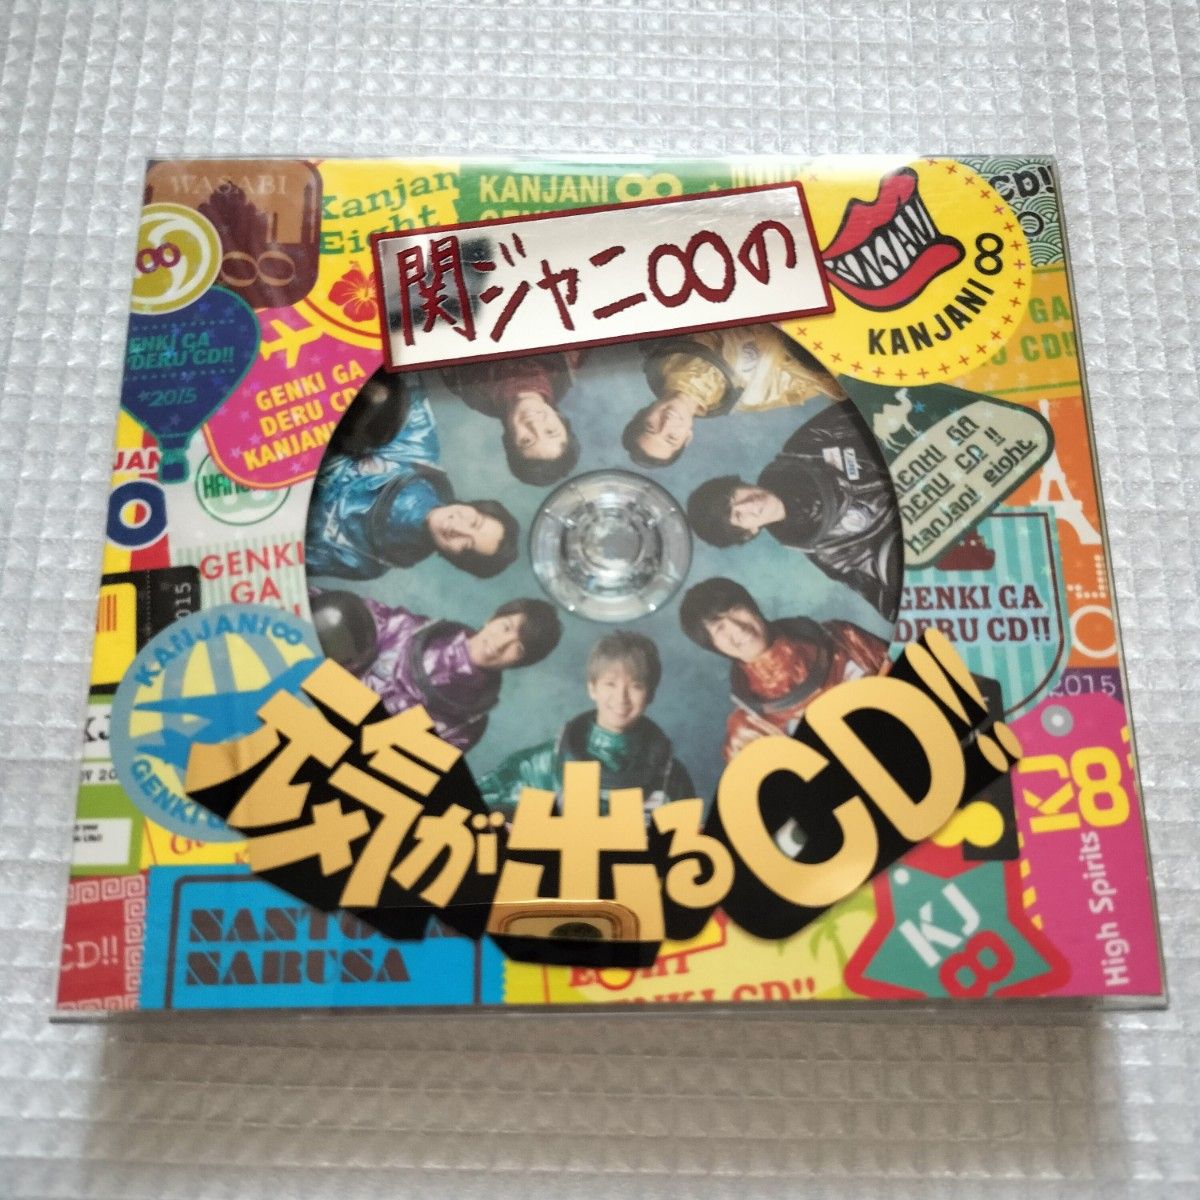 関ジャニ∞の元気が出るCD!! (初回限定盤A) (DVD付)